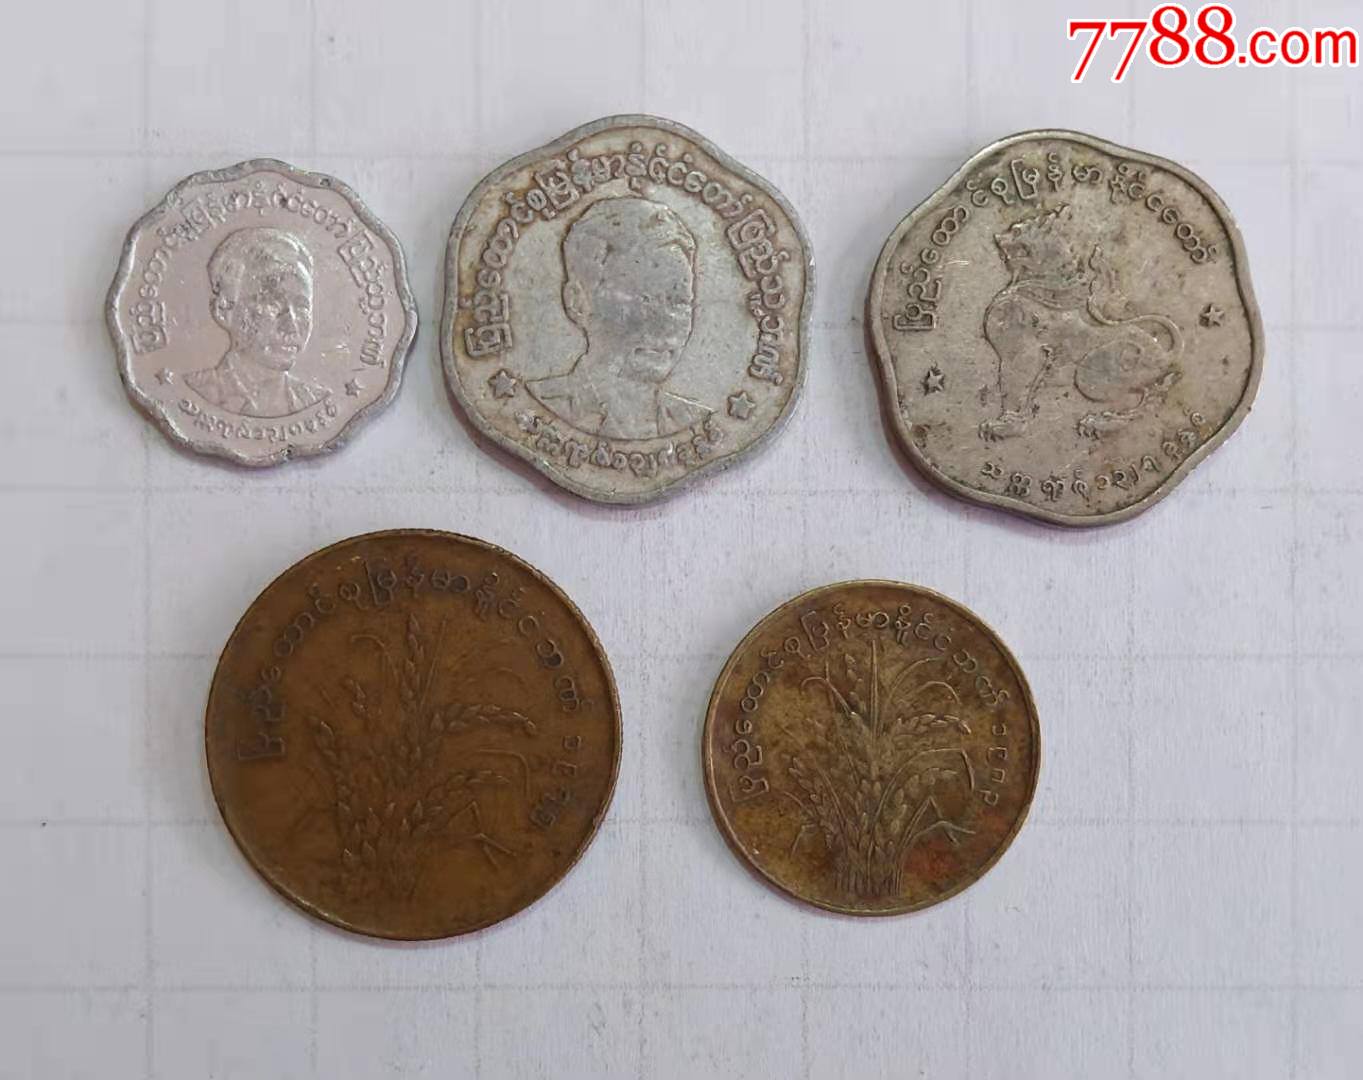 10缅甸人(缅甸)元硬币 库存图片. 图片 包括有 替换, 付款, 图标, 聚会所, 硬币, 采购, 经济 - 91502639